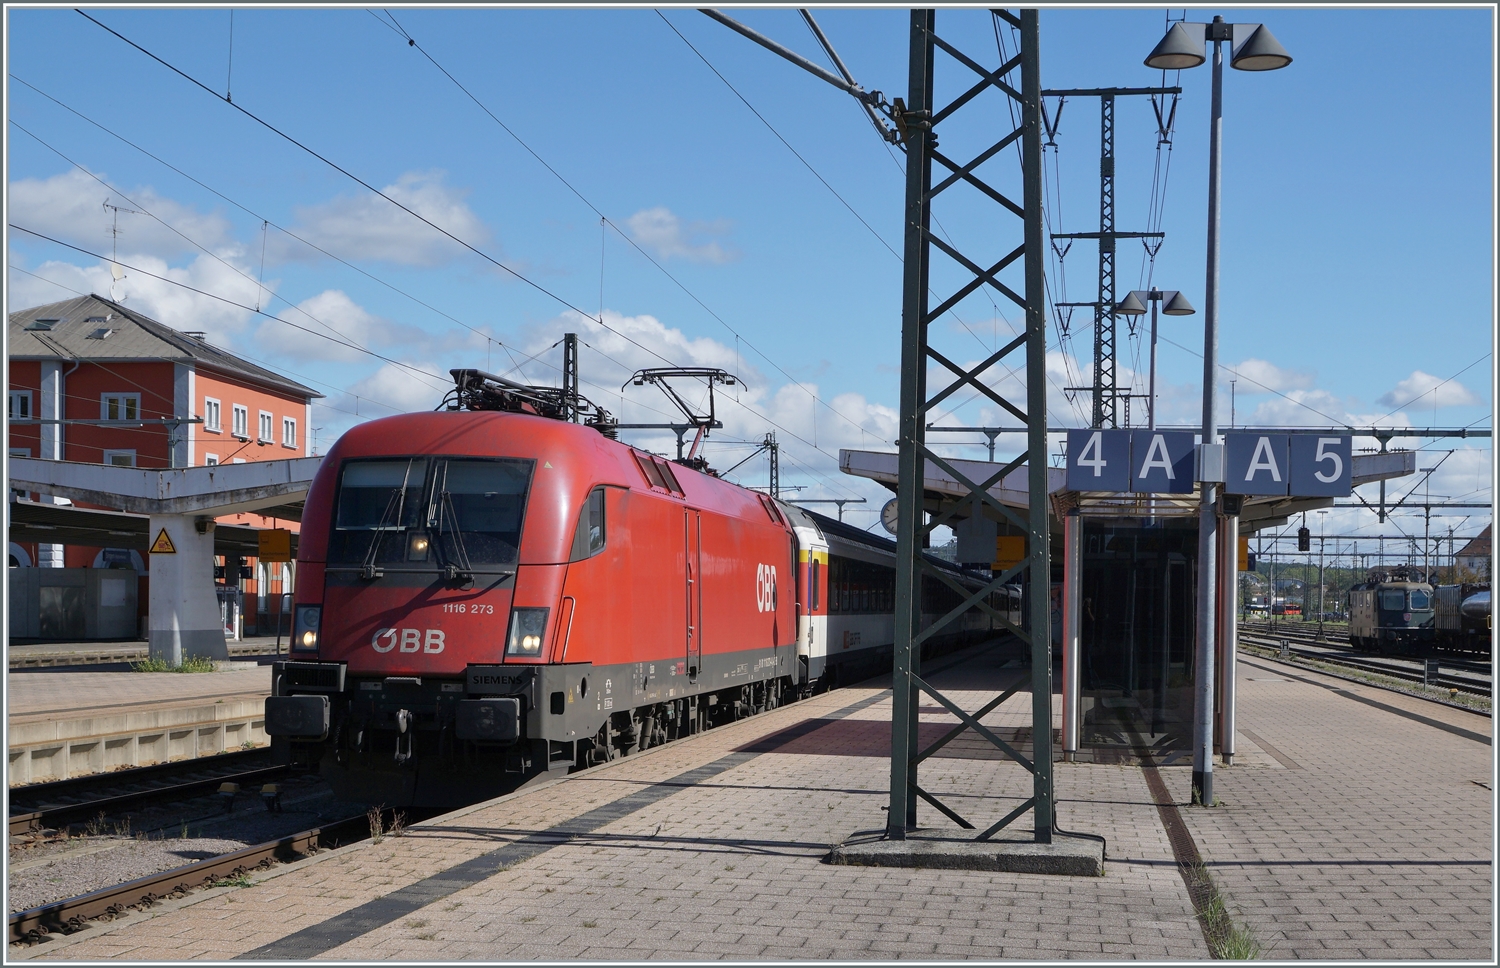 Die ÖBB 1116 273 hat in Singen den von Zürich gekommen EC übernommen und wird in nach Stuttgart bringen. Die ÖBB Loks werden Umlaufsbedingt  bzw. Ausgleichsbedingt (DB 101 im NJ-Verkehr) im Gäu eingesetzt. 

19. Sept. 2022